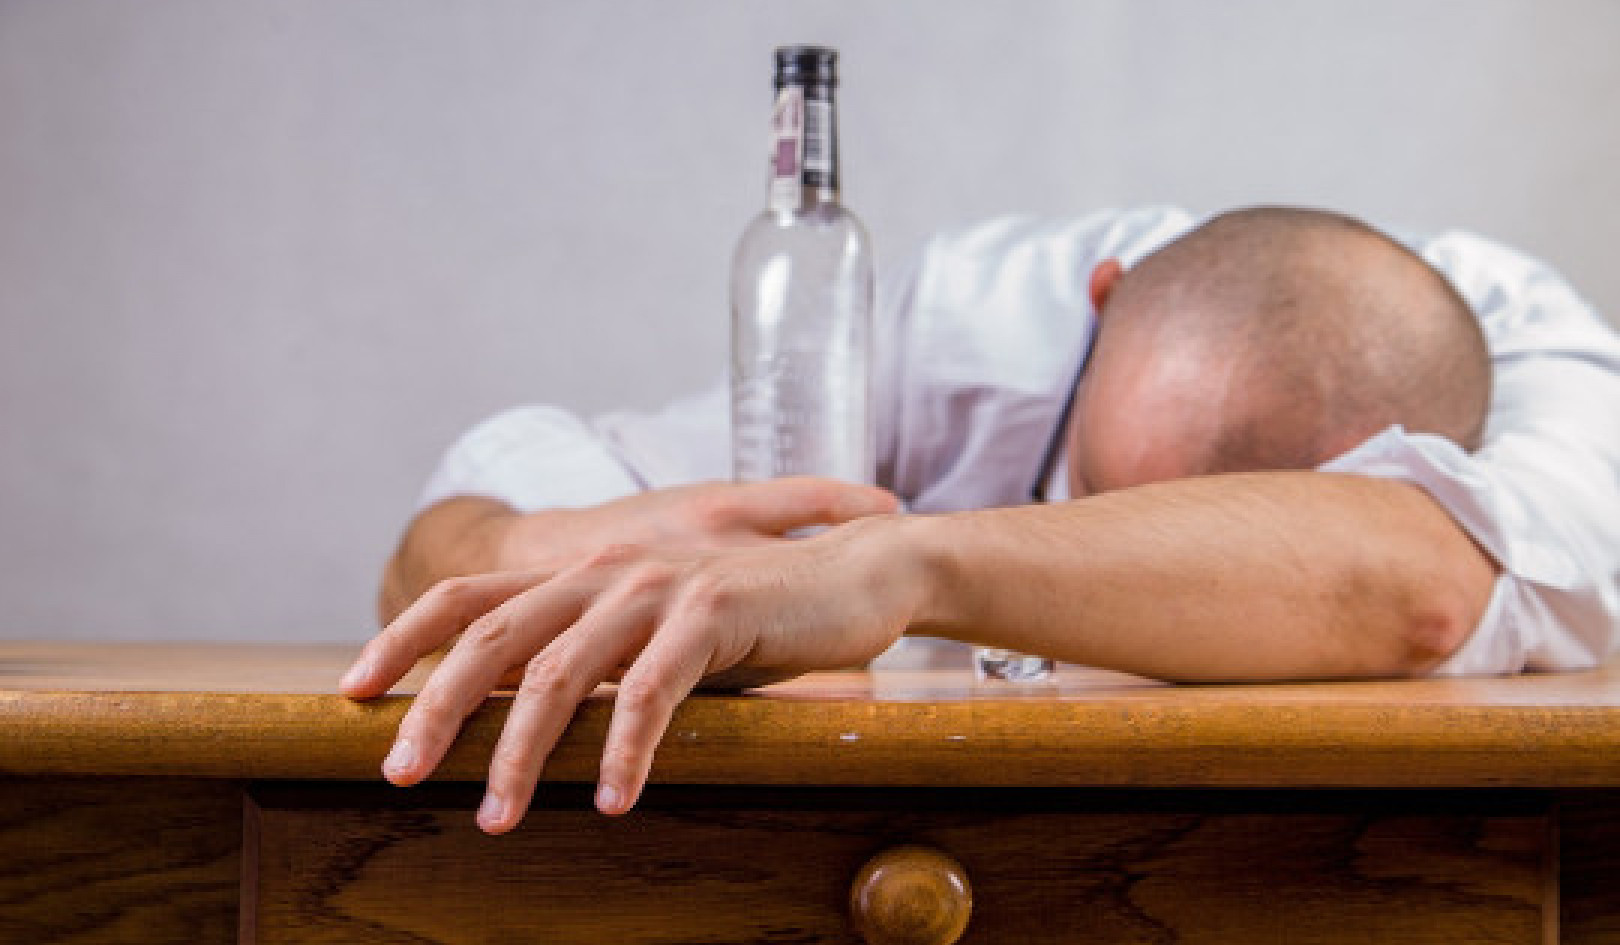 Quand les gens sont-ils plus susceptibles de boire beaucoup ?